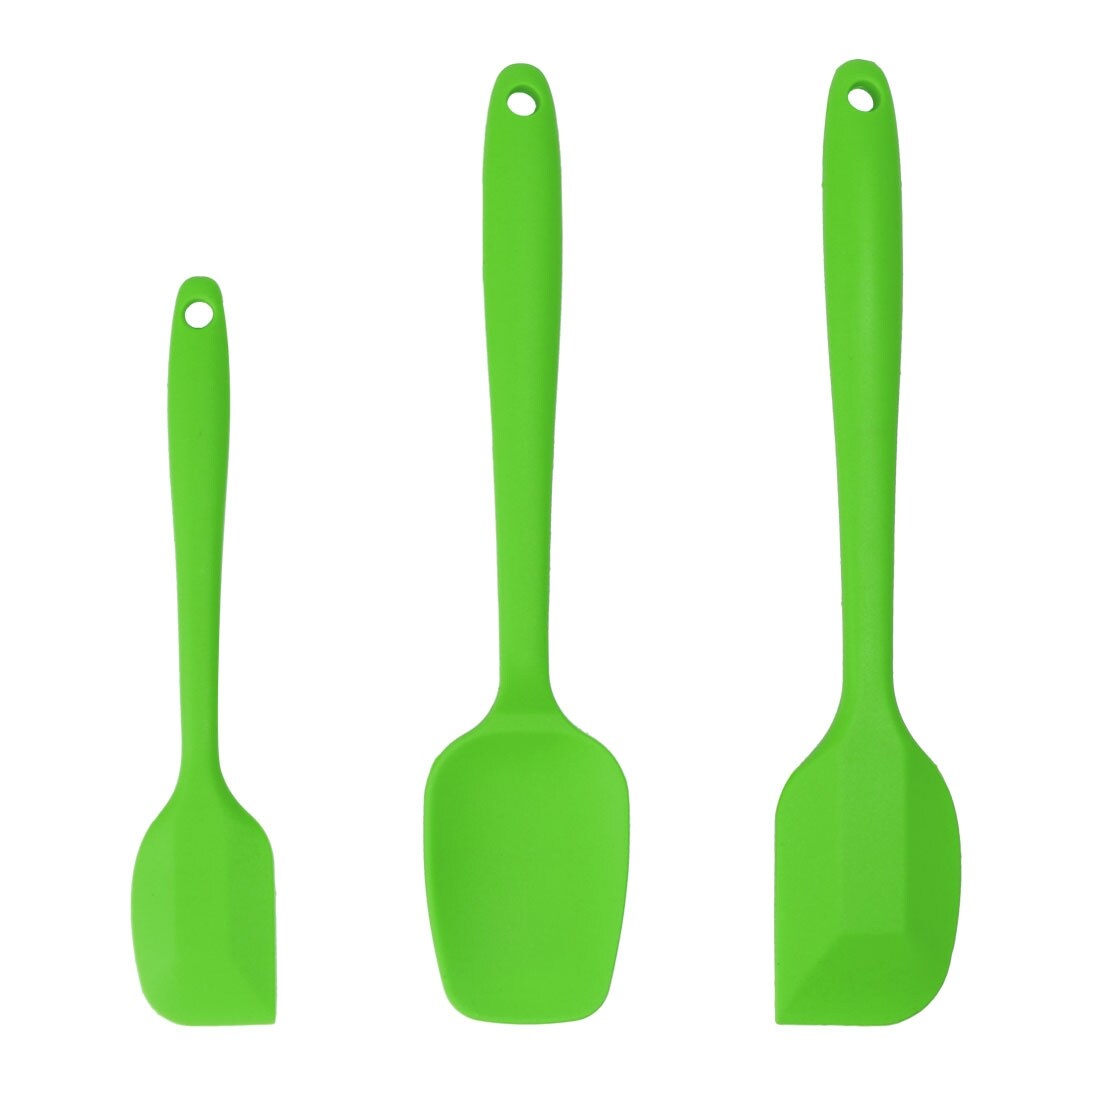 green silicone spatula